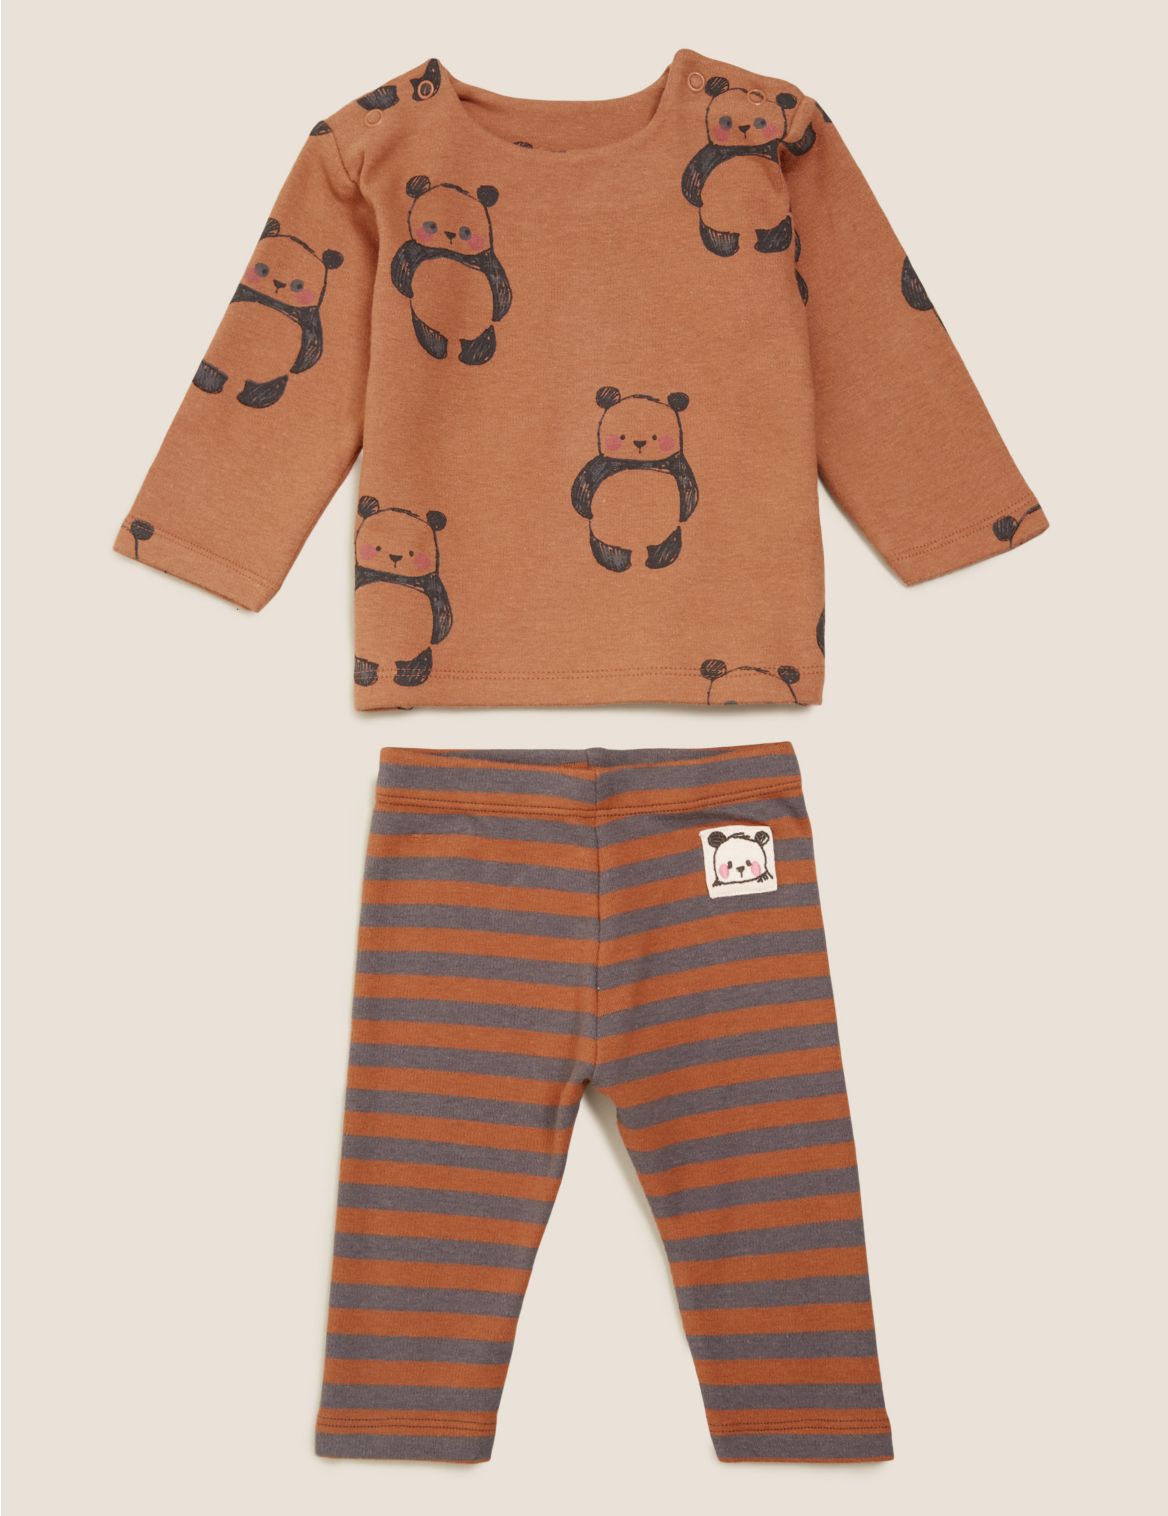 2pc Cotton Panda Outfit (0-3 Yrs) brown